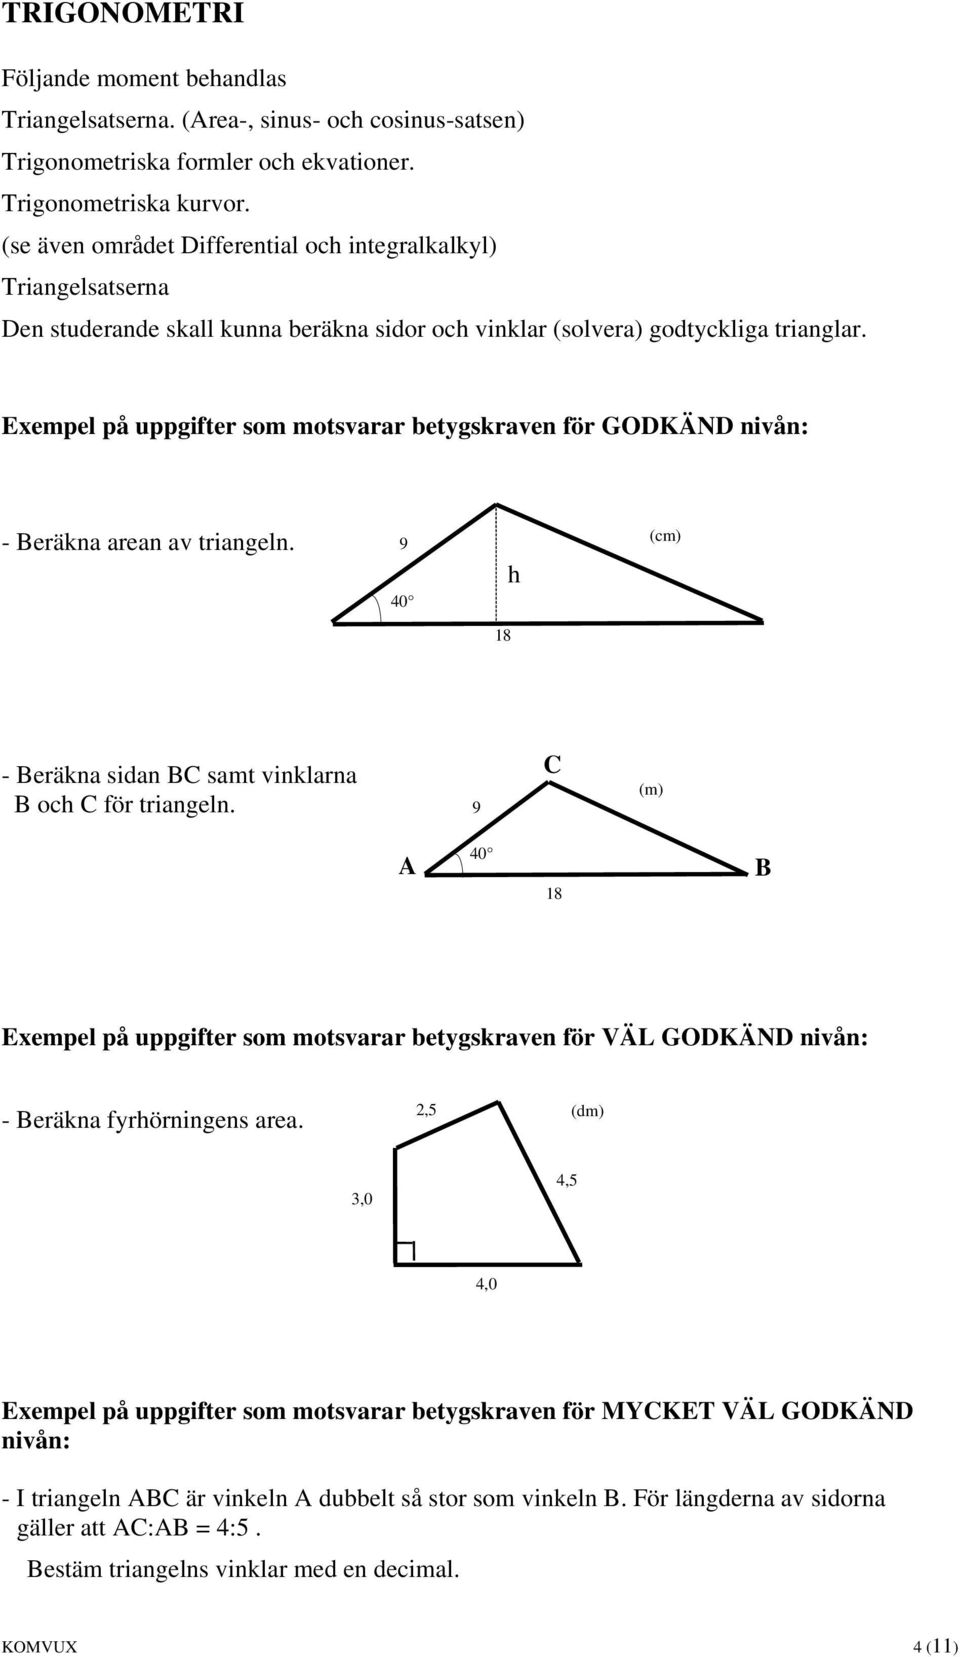 - Beräkna arean av triangeln. 9 40 h (cm) 18 - Beräkna sidan BC samt vinklarna B och C för triangeln. 9 C (m) A 40 18 B - Beräkna fyrhörningens area.